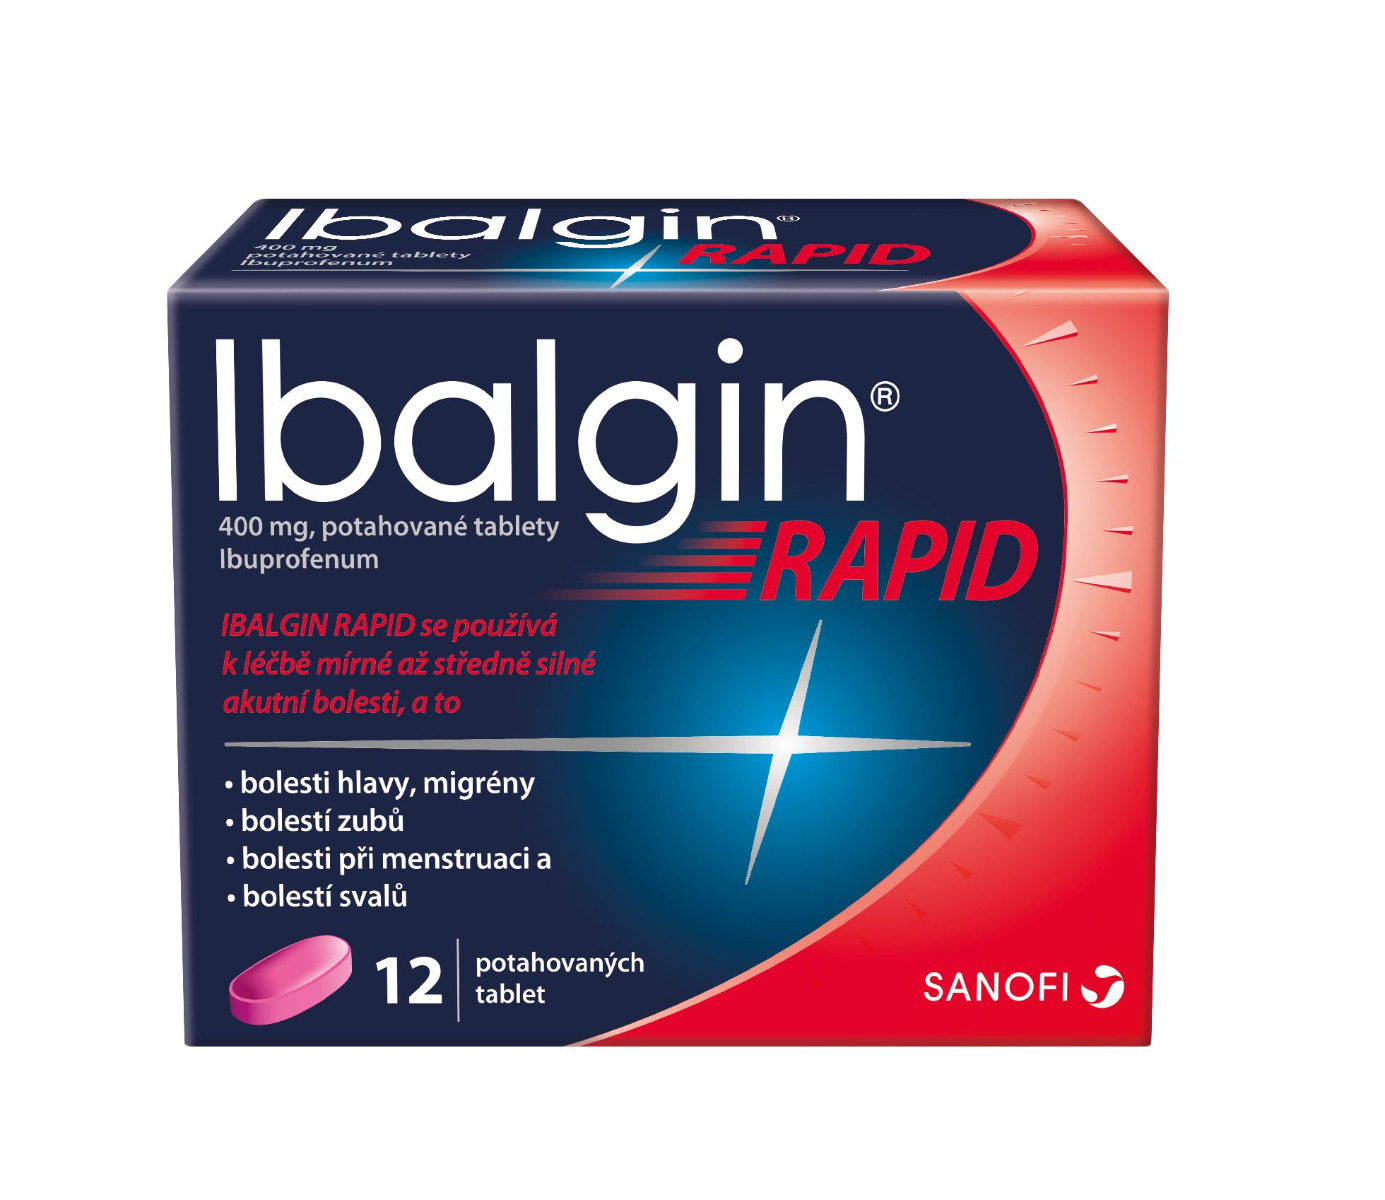 Ibalgin Rapid 400 mg 12 tablet Ibalgin